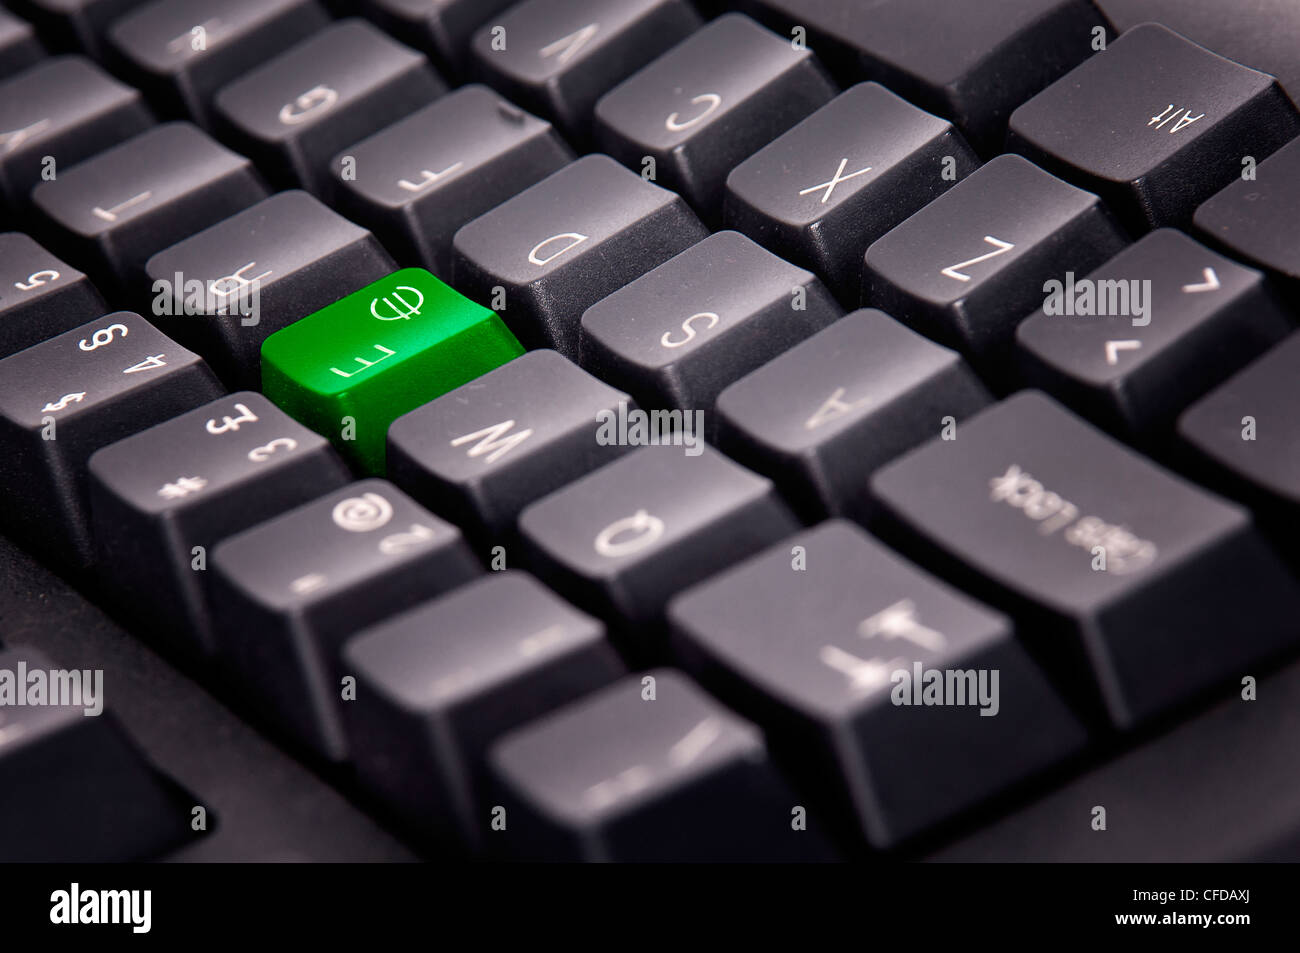 Clavier de l'ordinateur avec touche euro en vert Banque D'Images